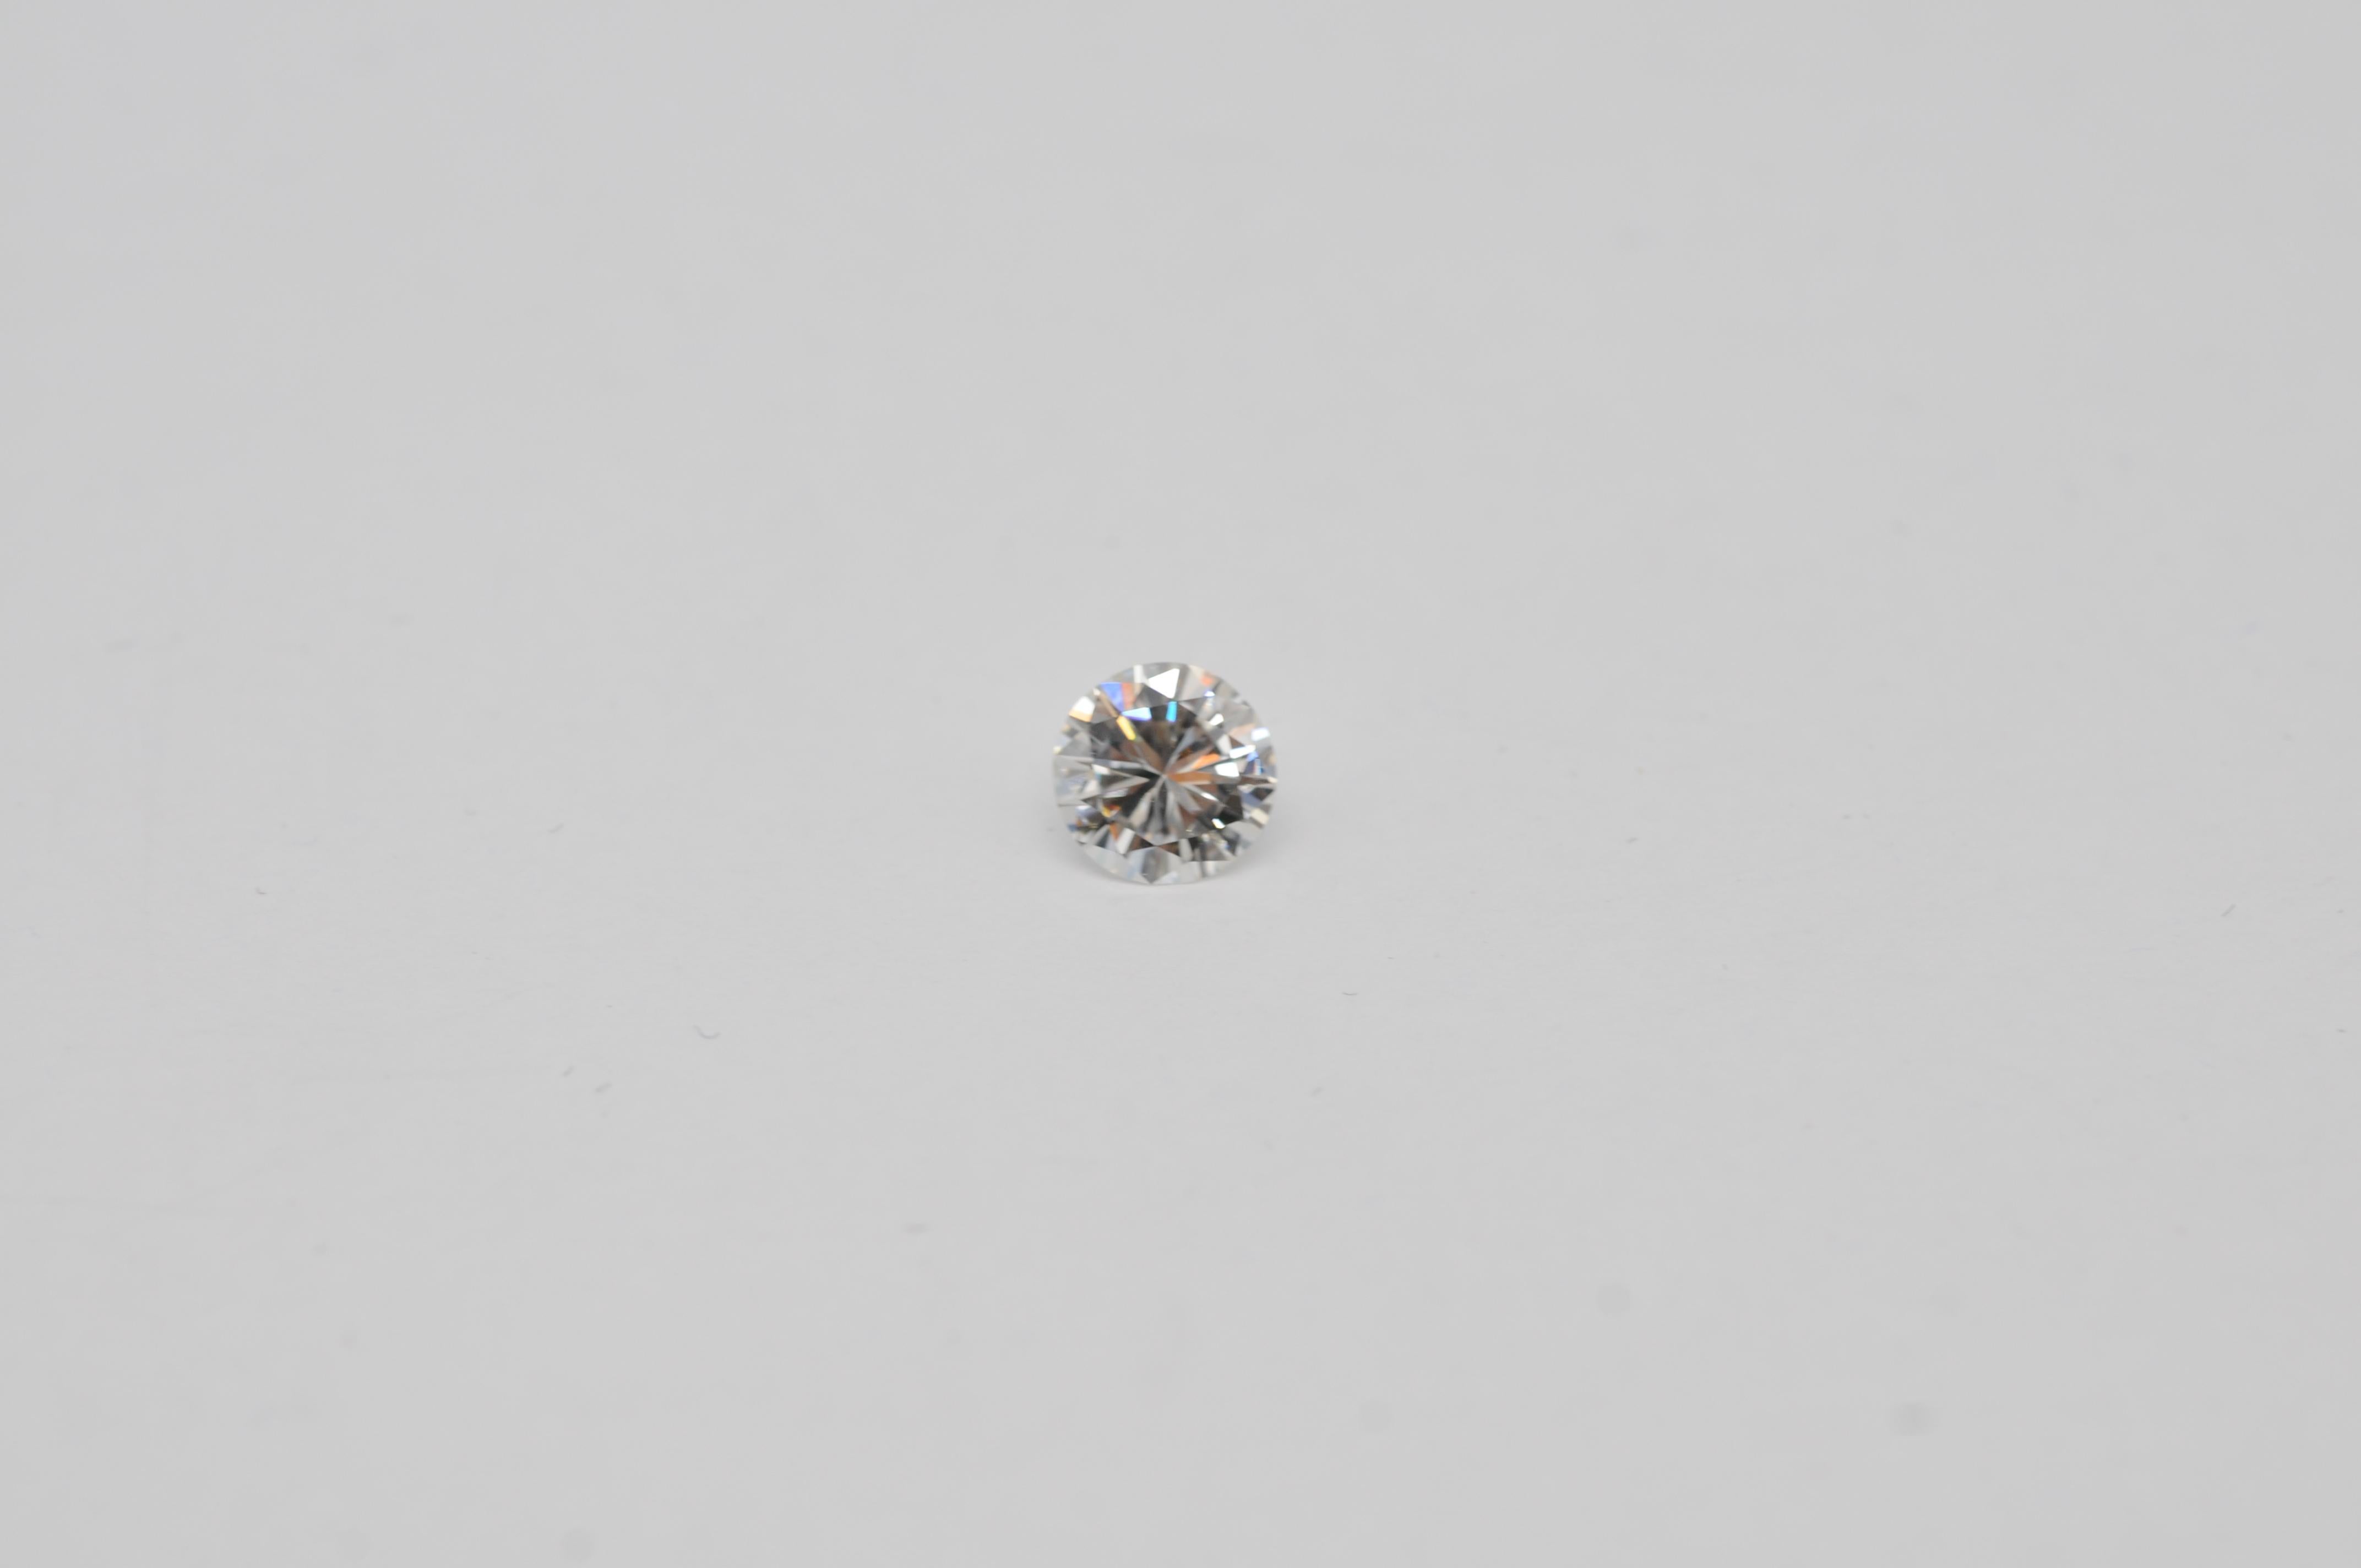 Details zum Diamanten:

Karat: 0,57
Reinheit: VVS2 (Very Very Slightly Included, mit winzigen Einschlüssen, die nur unter 10-facher Vergrößerung sichtbar sind)
Farbe: E (Außergewöhnliches Weiß)
Schnitt: Gut
Form: Brillant-Schliff
Zusätzliche